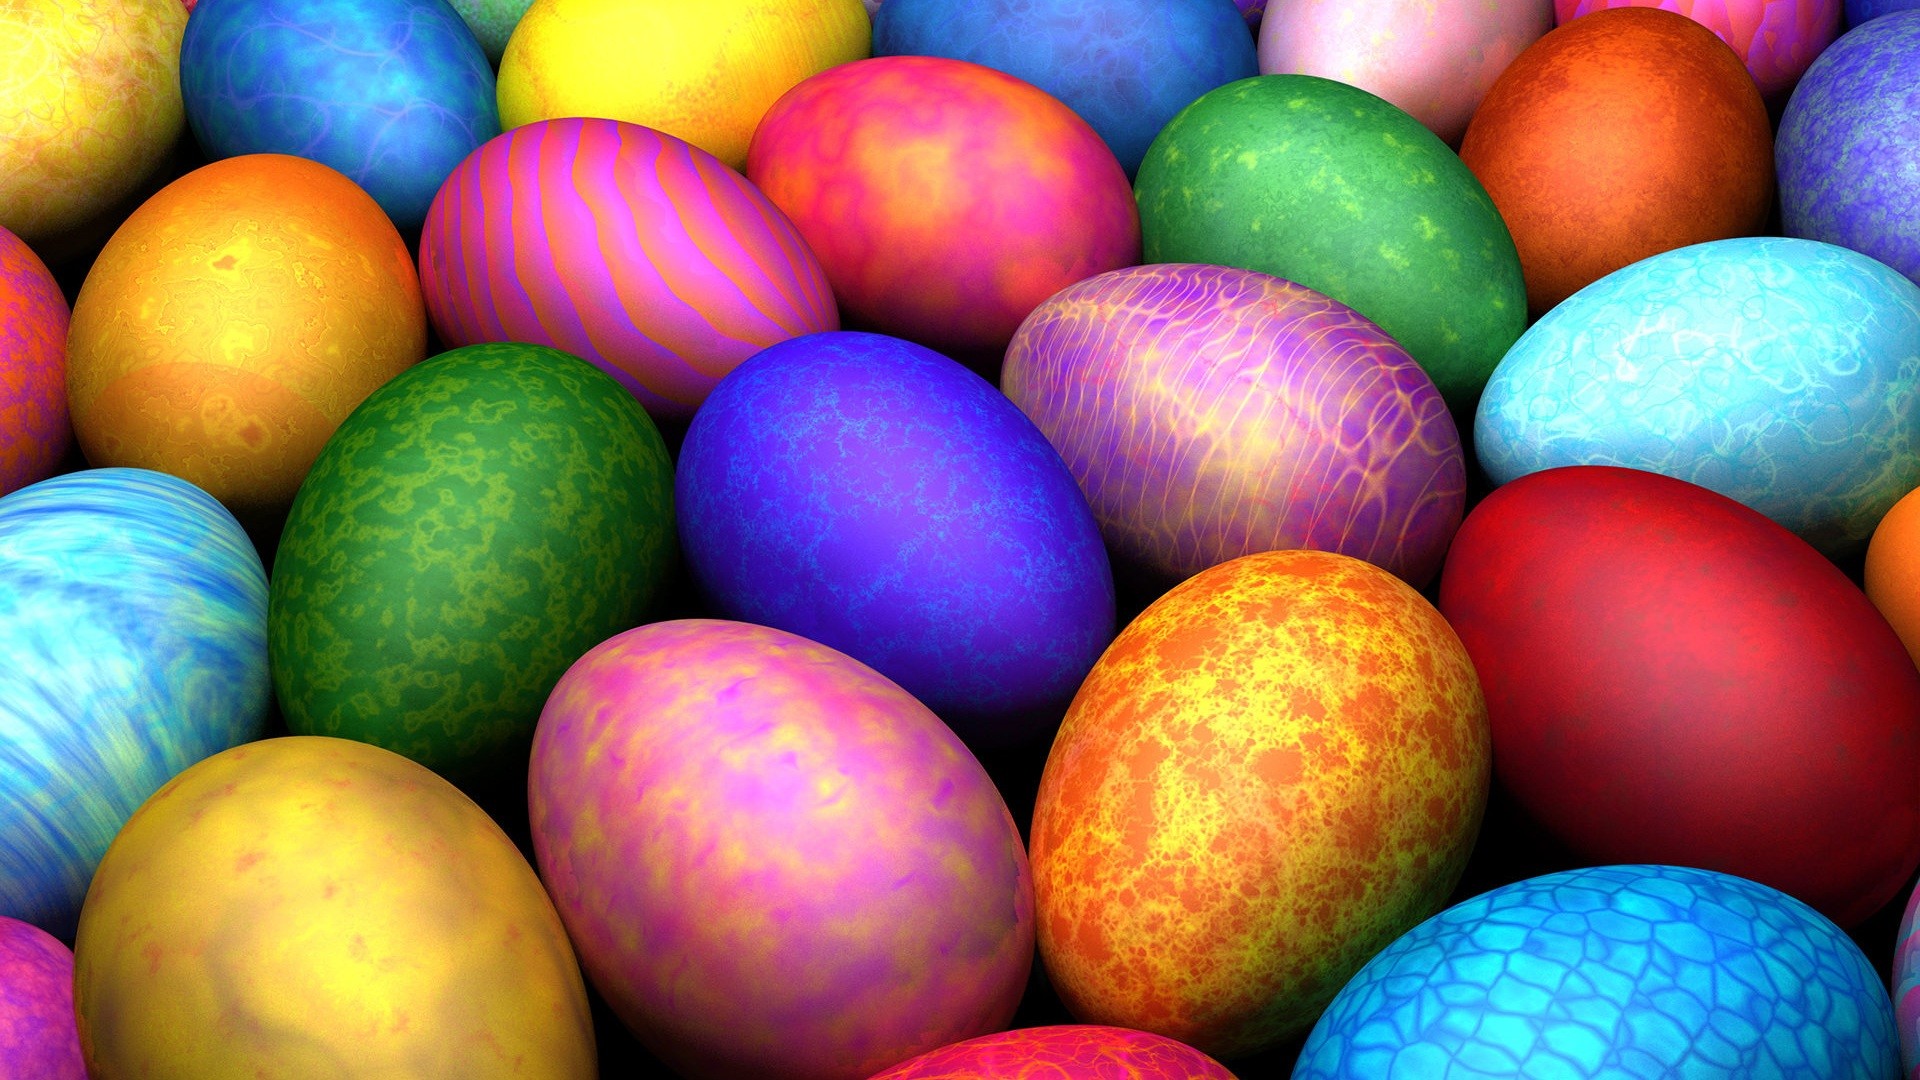 carta da parati uovo di pasqua,uovo di pasqua,pasqua,colorfulness,uovo,uovo